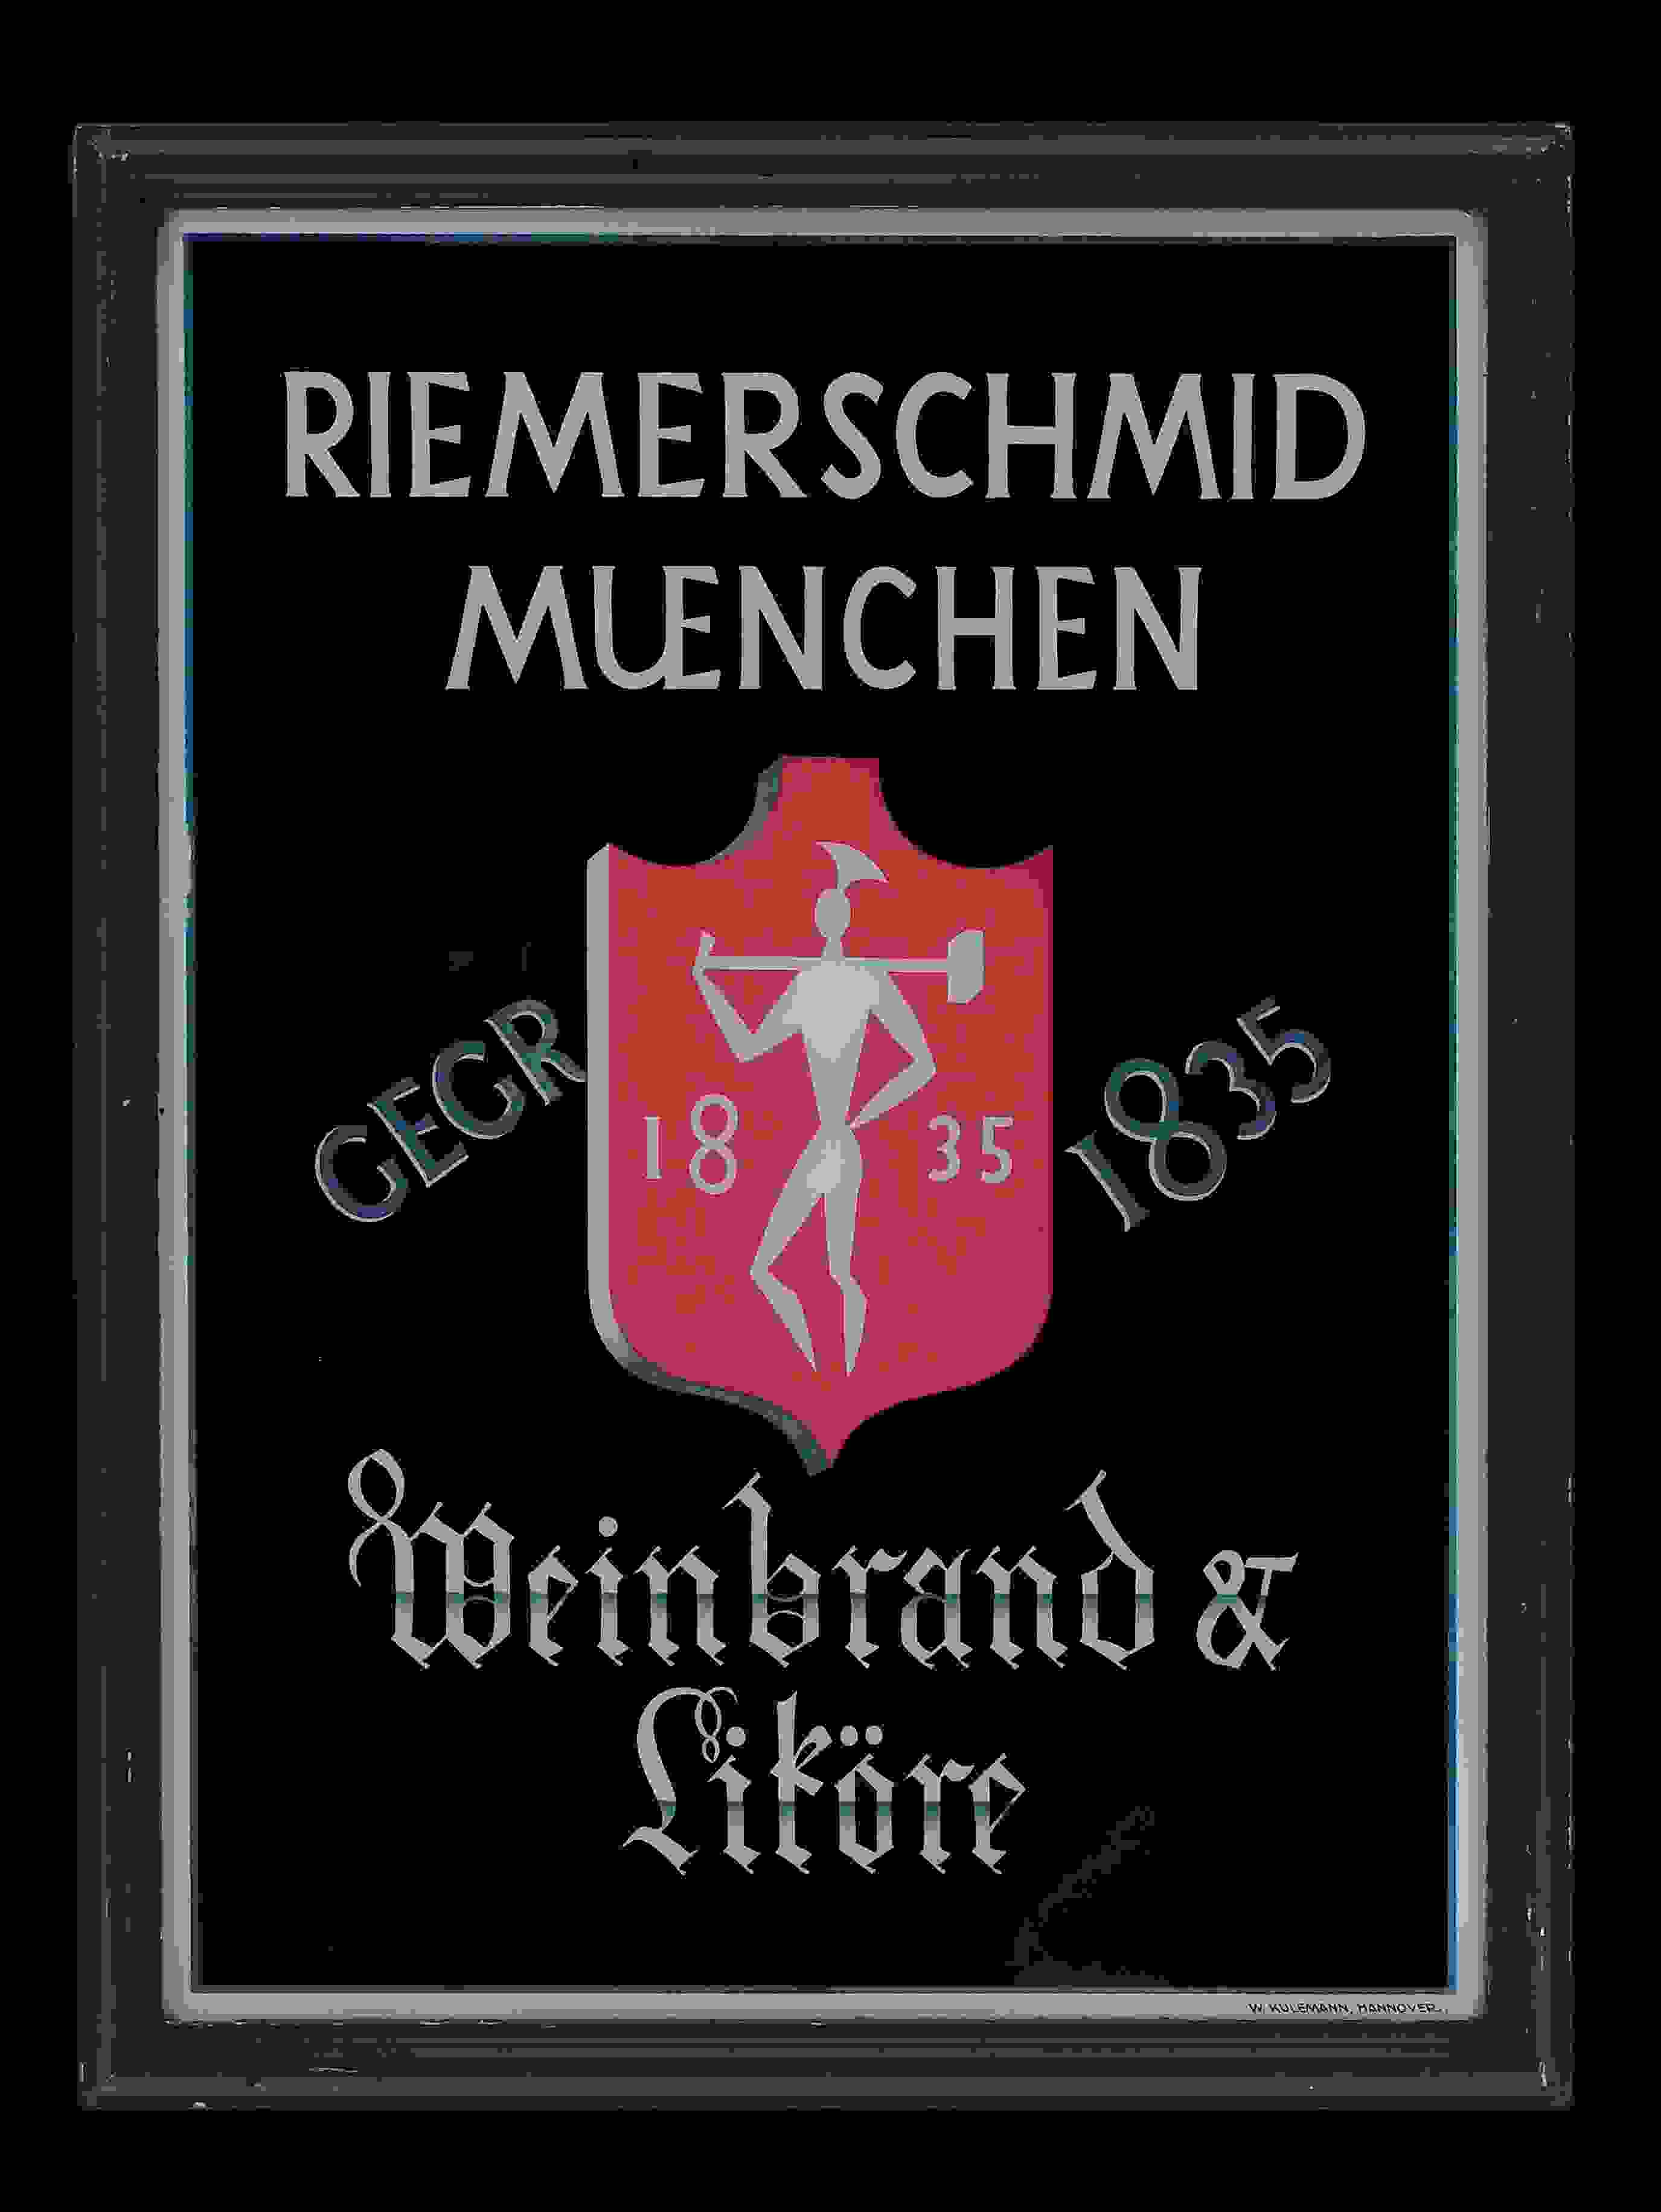 Riemerschmid Weinbrand & Liköre 